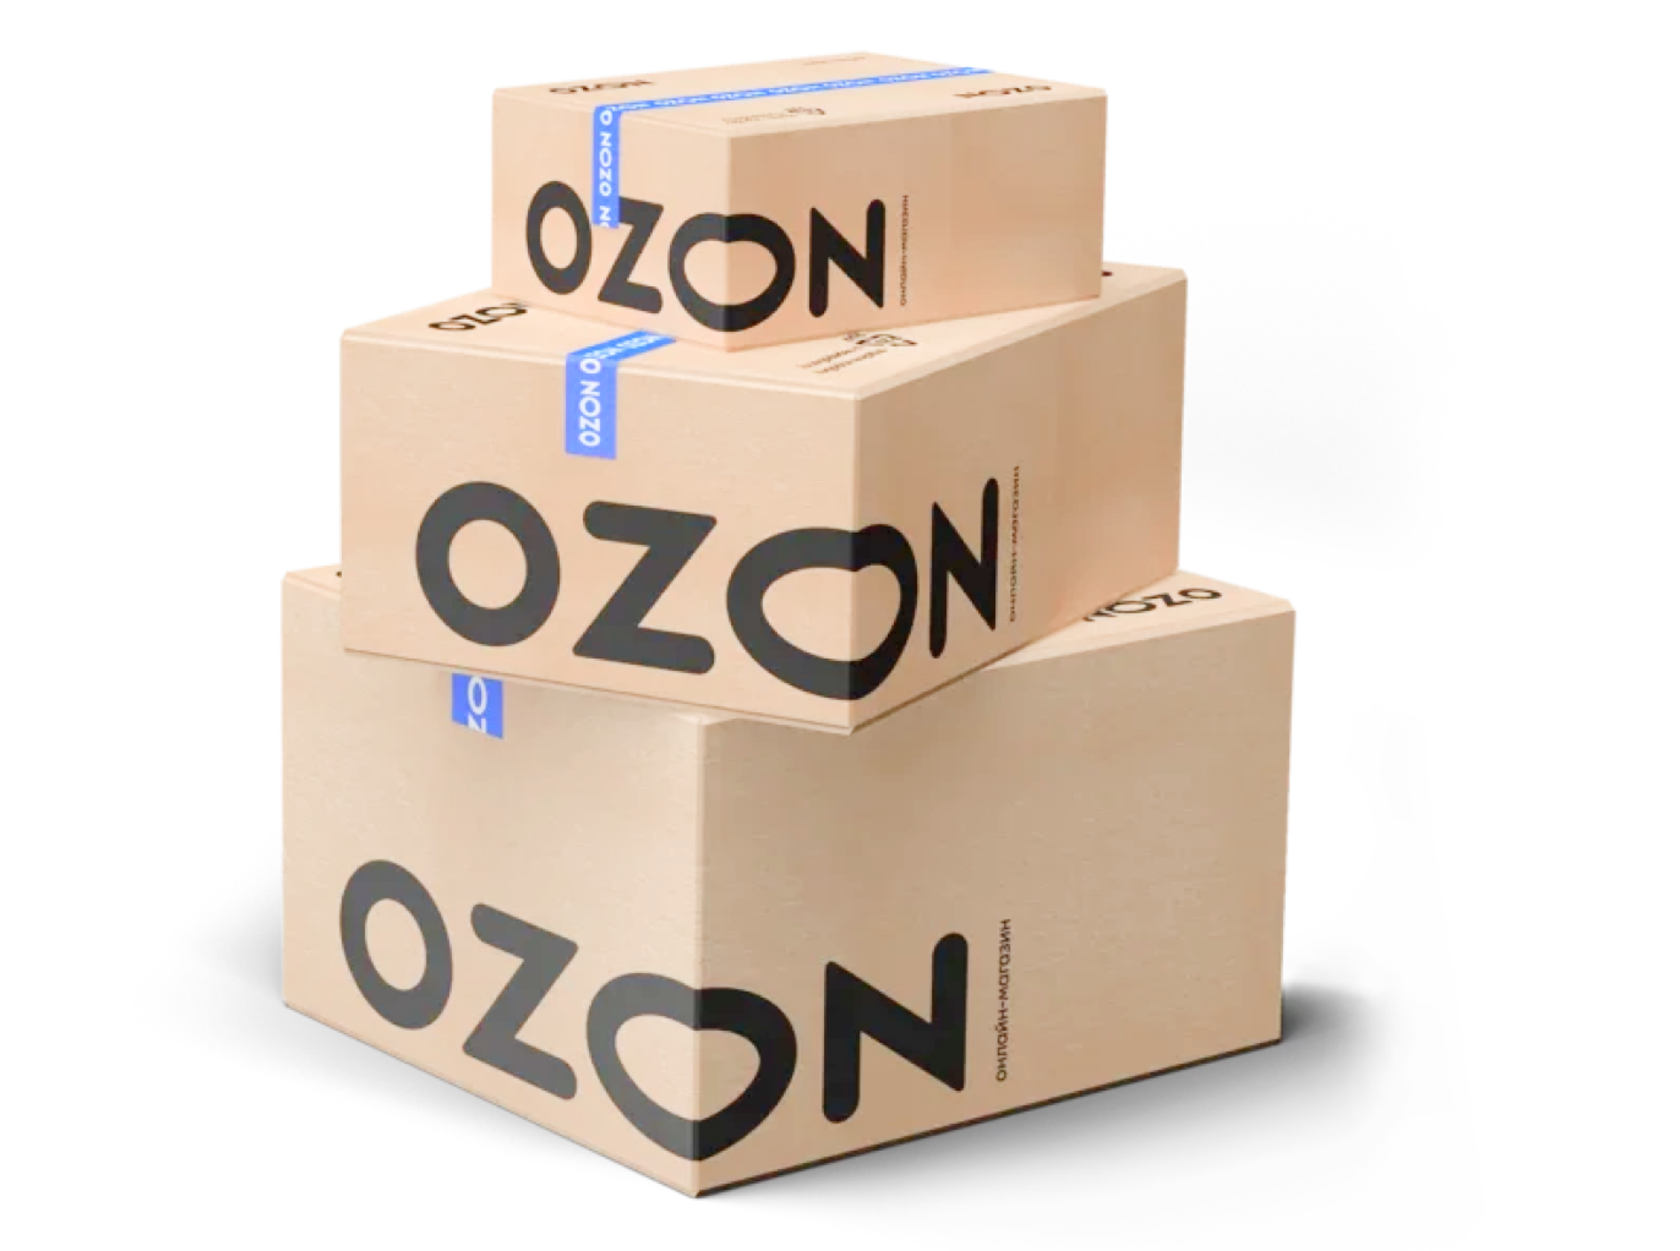 Озон интернет магазин цена доставки. Коробки Озон. Упаковка товара. Коробки с логотипом. Упаковка товара на маркетплейс.